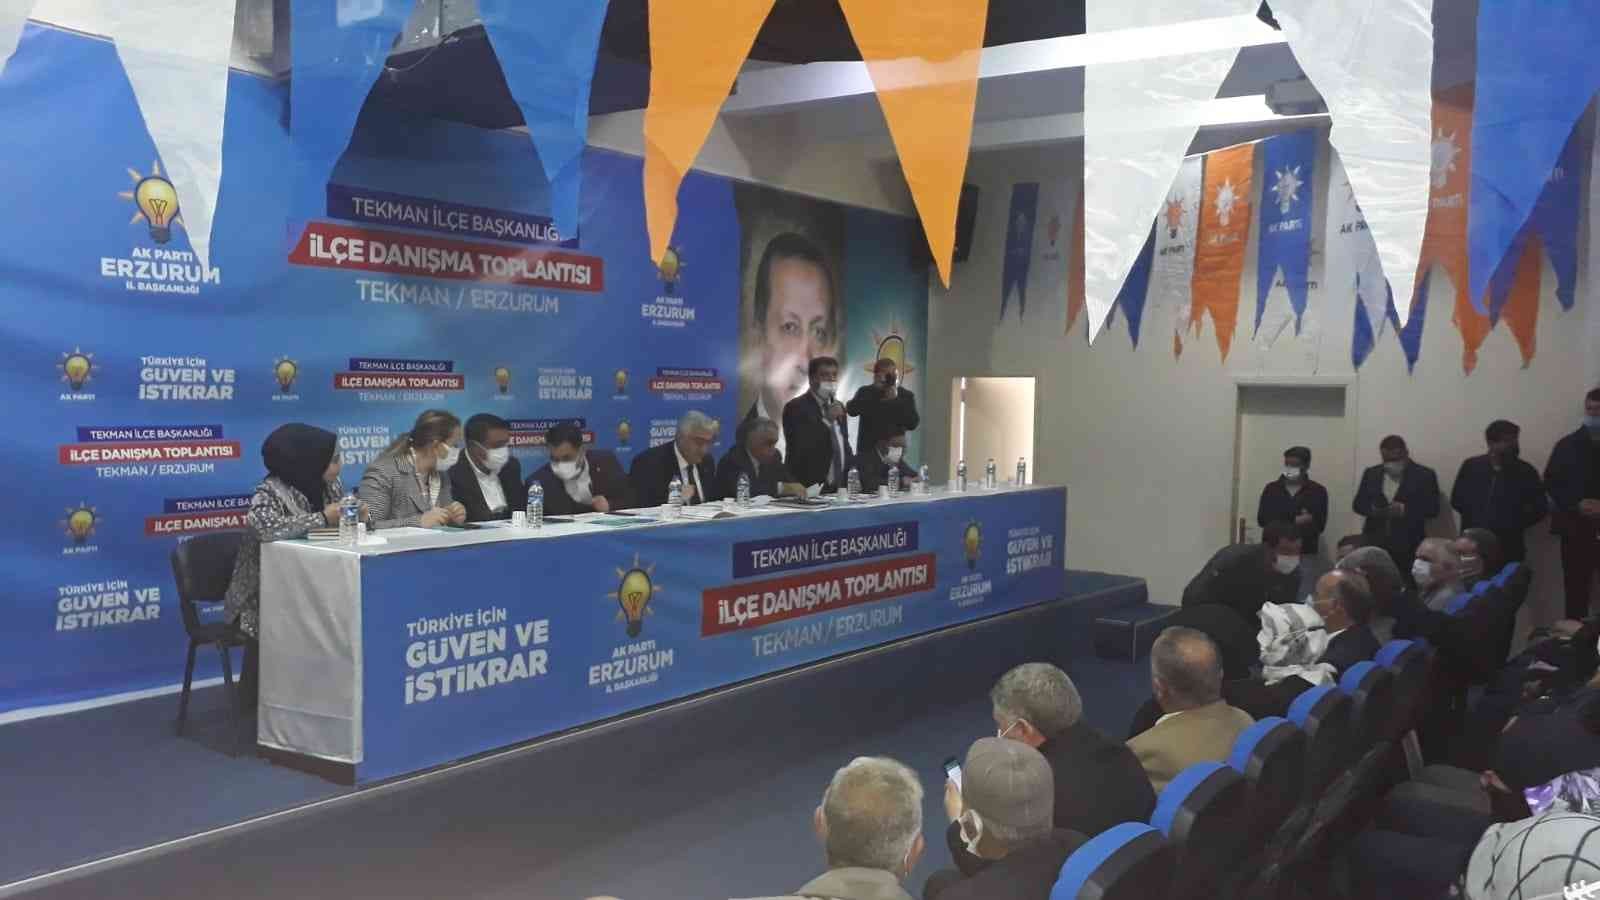 Tekman’da AK Parti İlçe Danışma Toplantısı düzenlendi